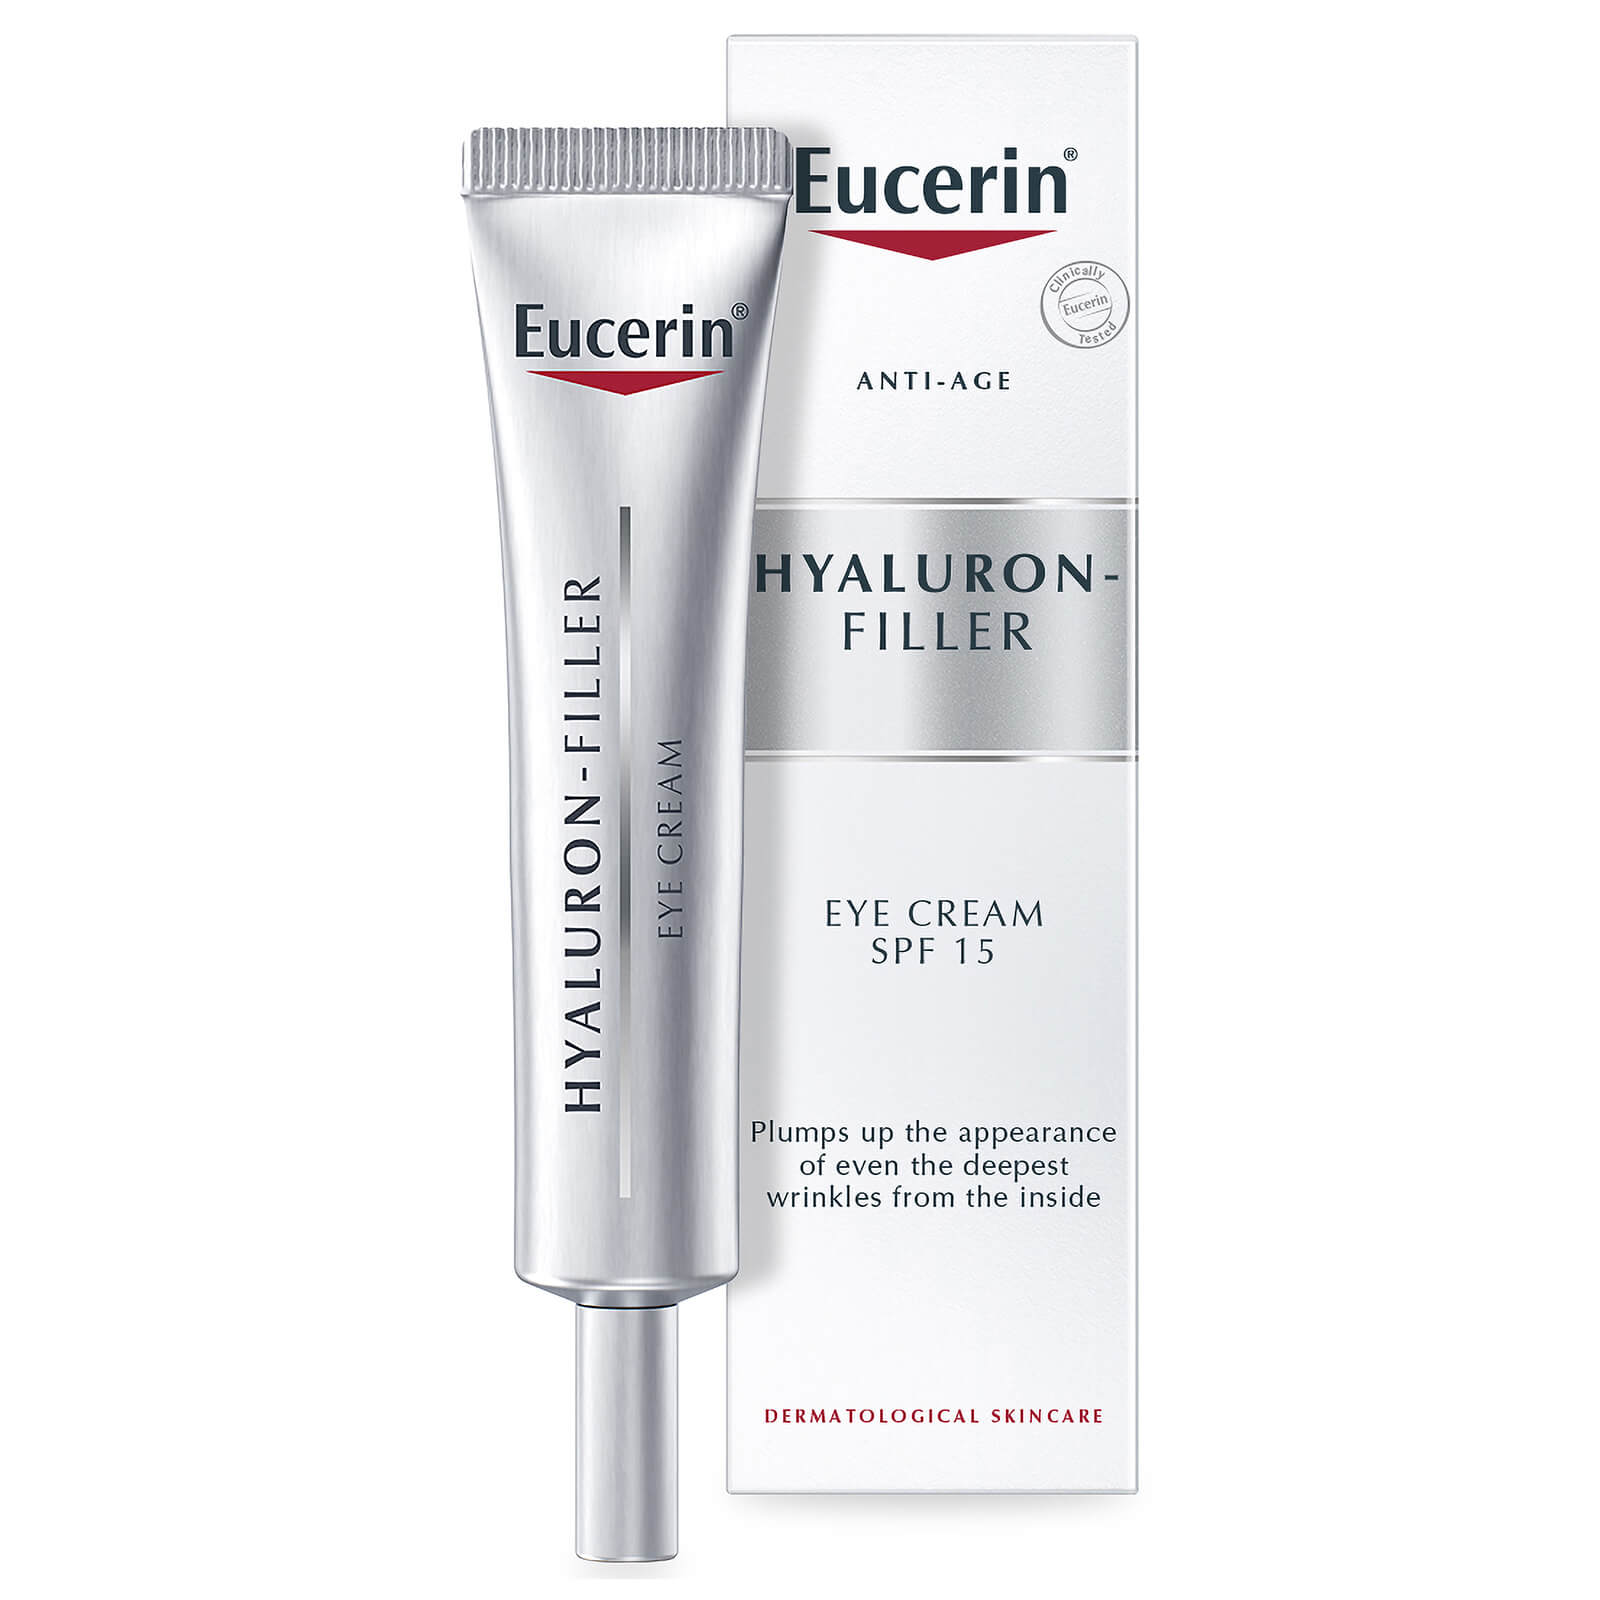 Eucerin HYALURON-FILLER Wrinkle Filling Treatment Eye Cream SPF15